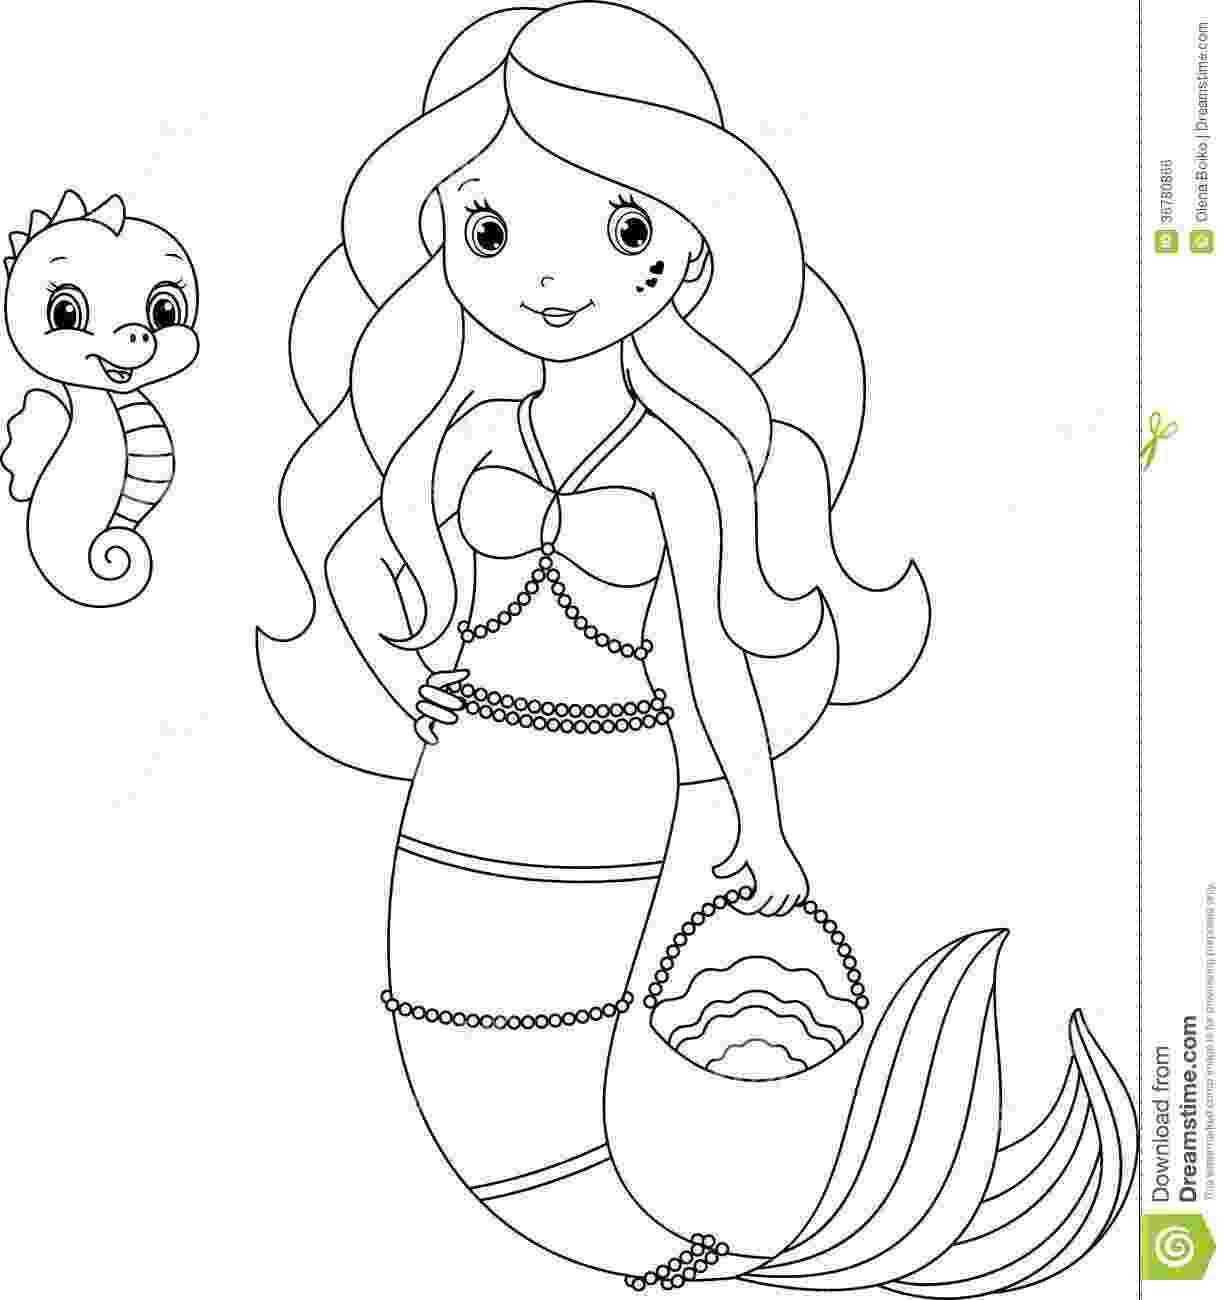 free mermaid coloring pages litle mermaid princess coloring pages mermaid free coloring pages 